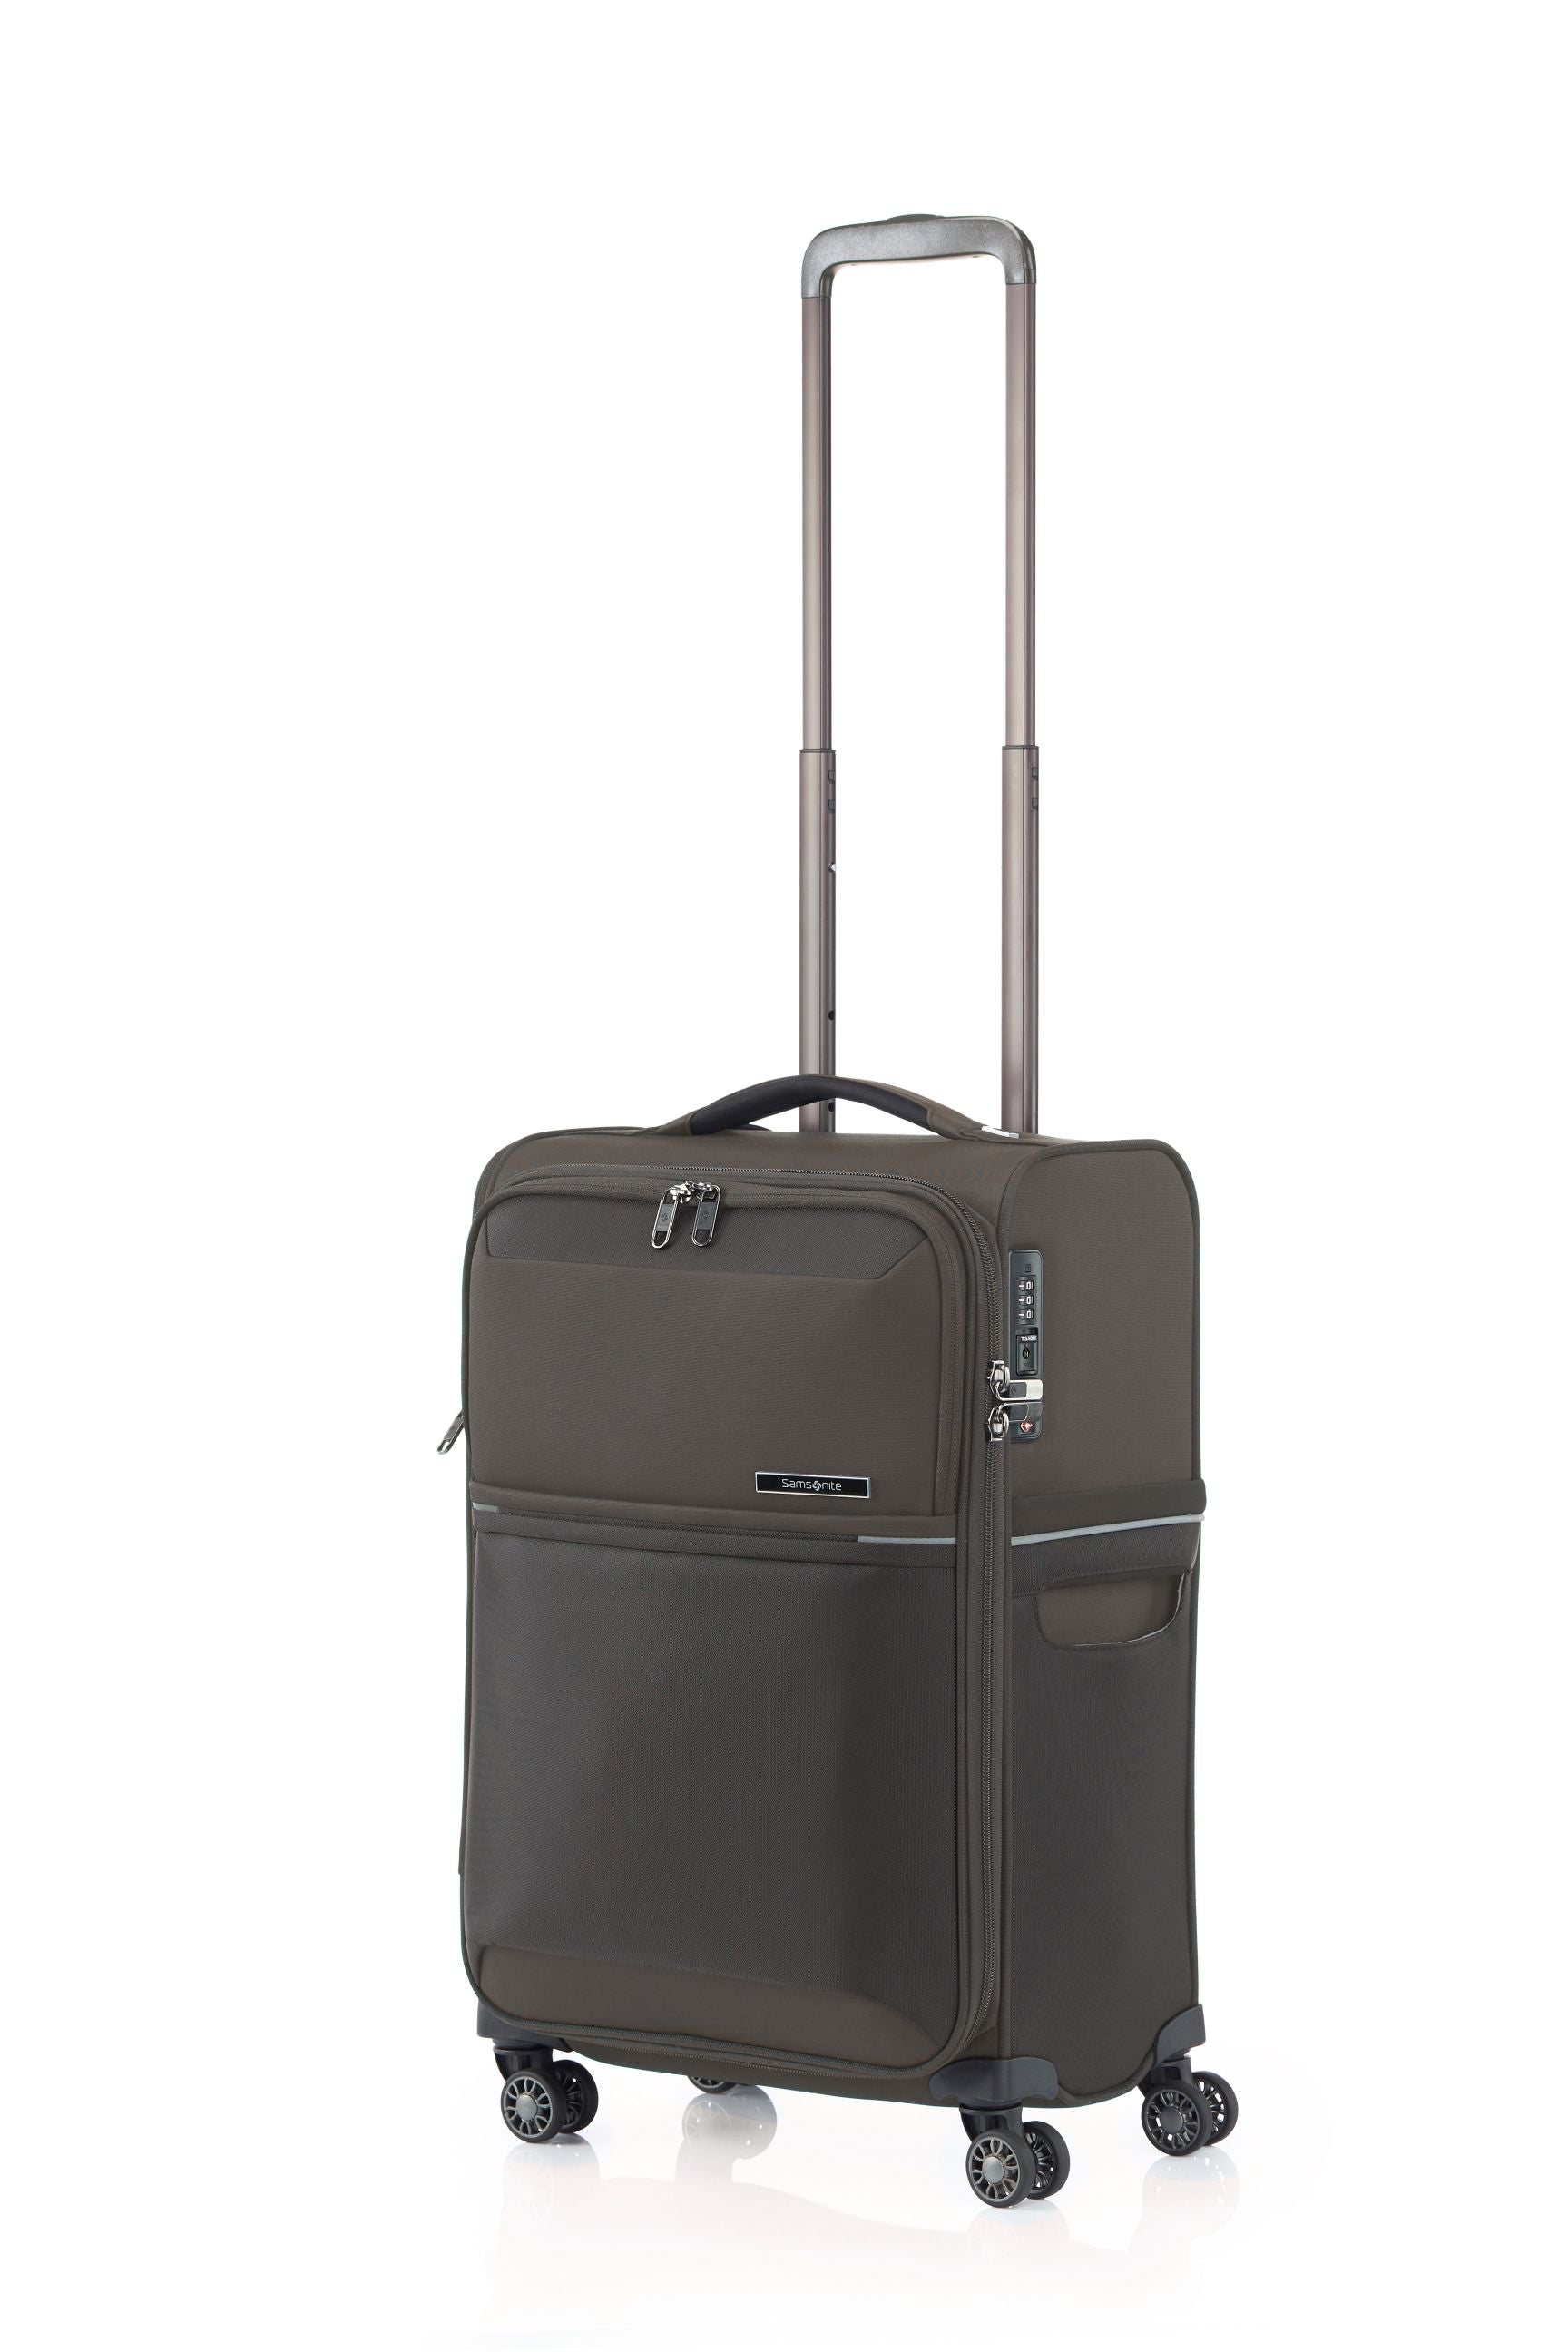 Samsonite - 73HR 55cm Small Suitcase - Platinum Grey